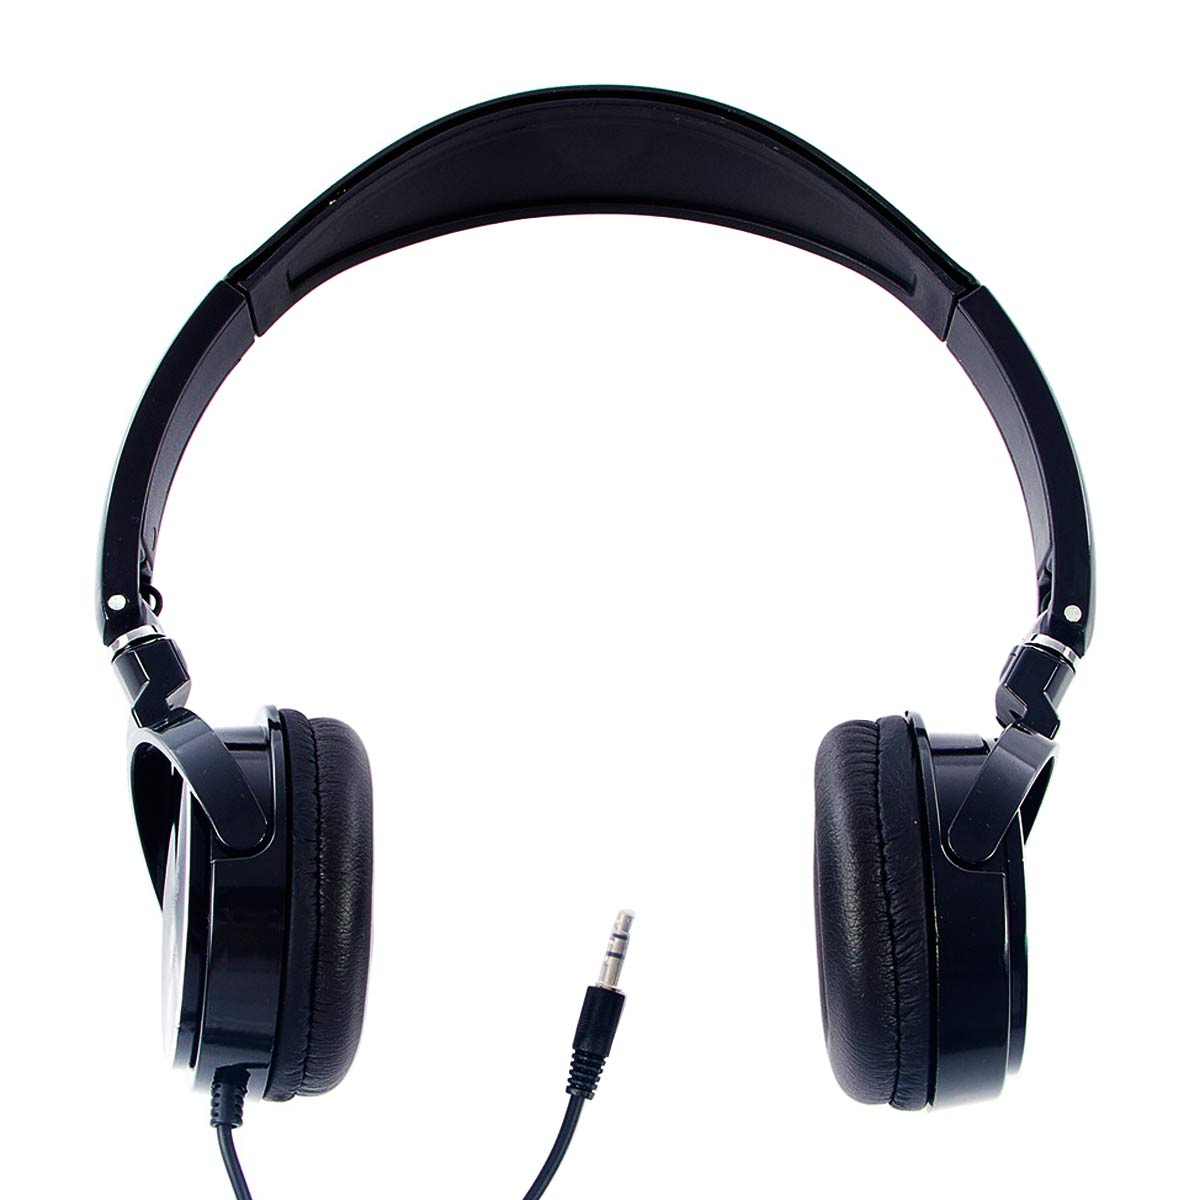 Menor preço em Fone de Ouvido Stereo Preto Headphone Logic - LS 2000 BK